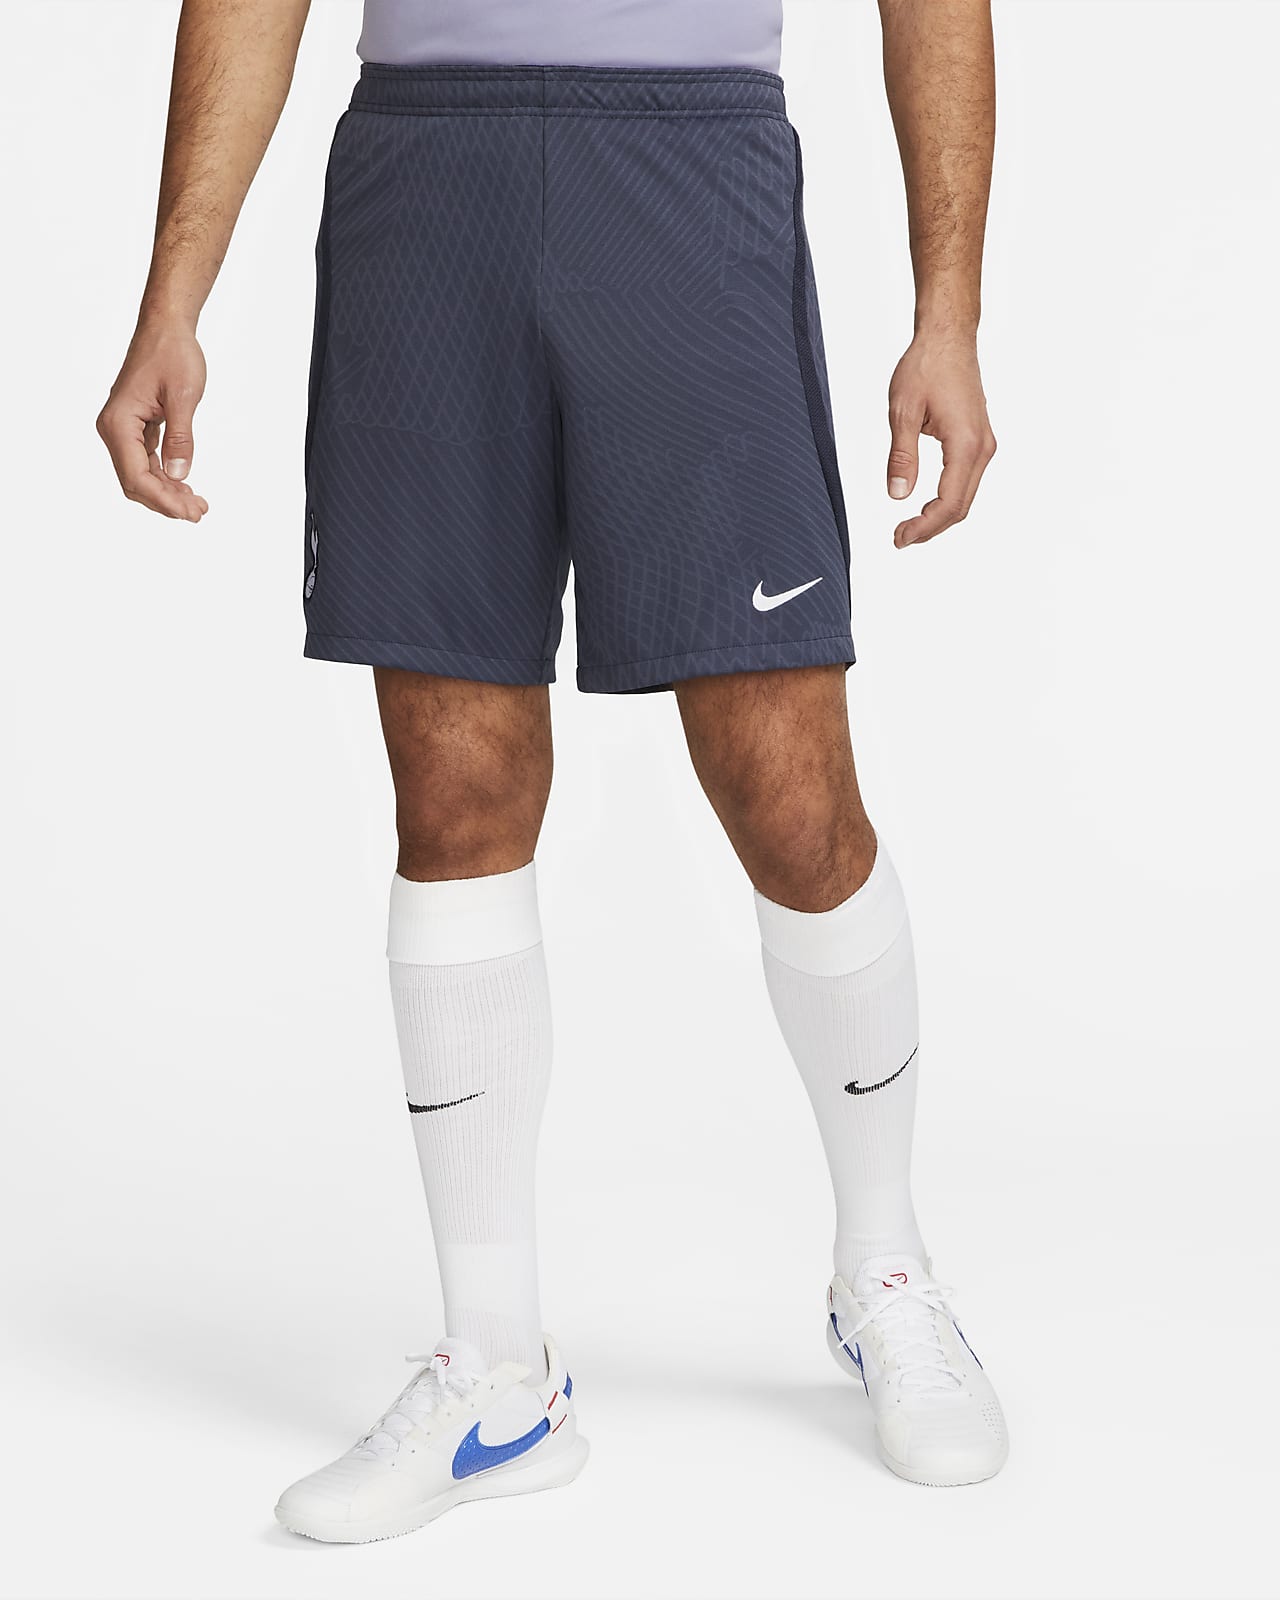 Tottenham Hotspur Strike Men's Nike Dri-FIT Knit Football Shorts